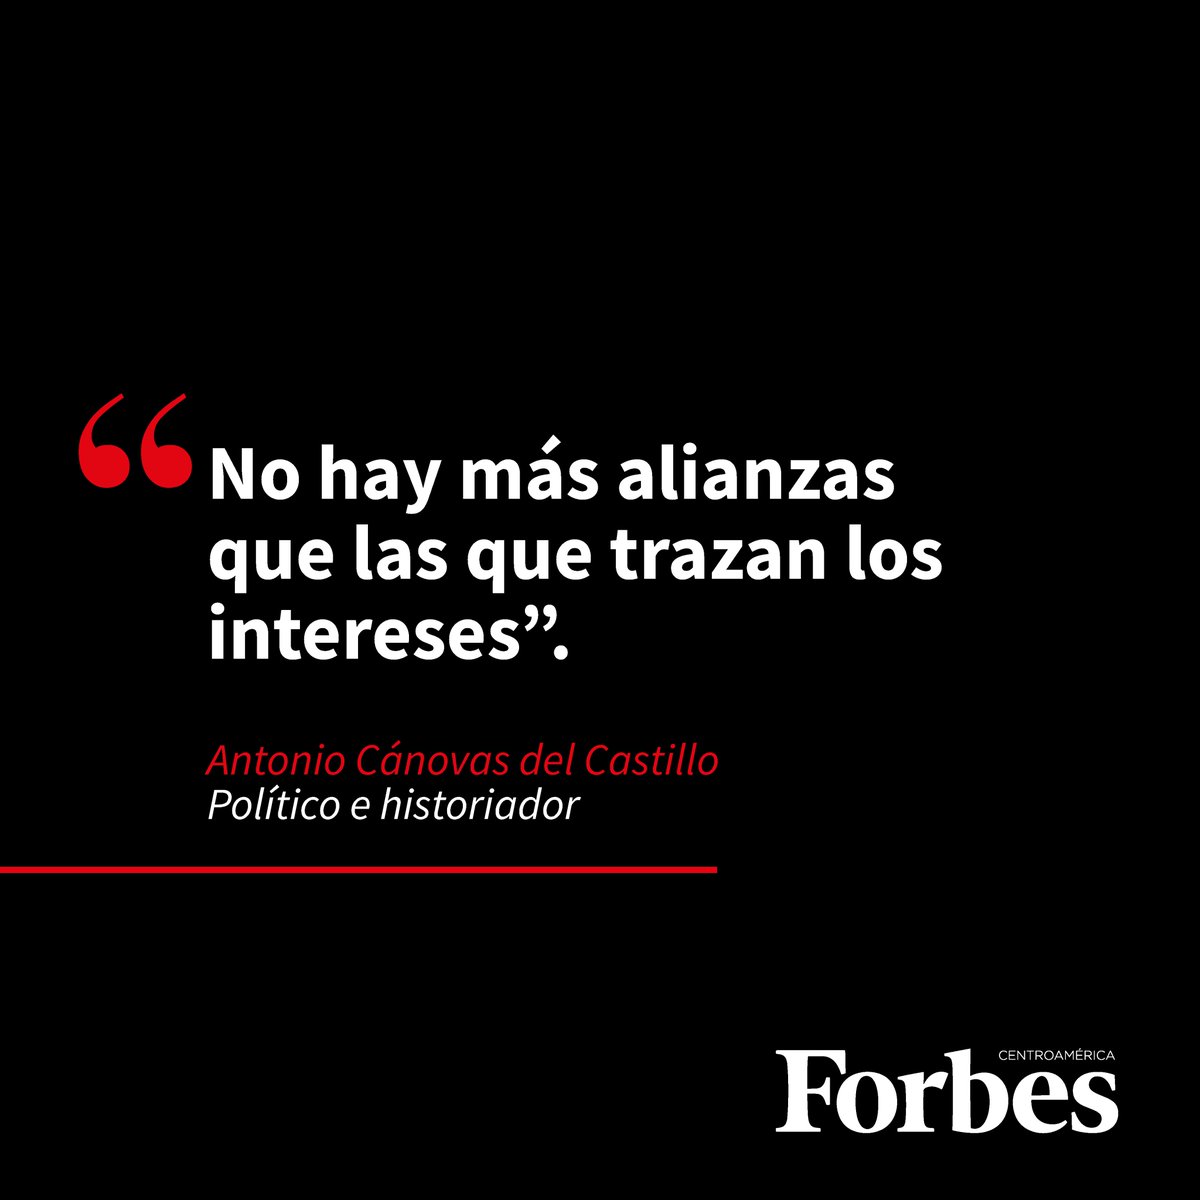 #FraseDelDía | ¡Excelente miércoles! Comenzamos el día con una frase del político Antonio Cánovas del Castillo. Manténgase informado en forbescentroamerica.com